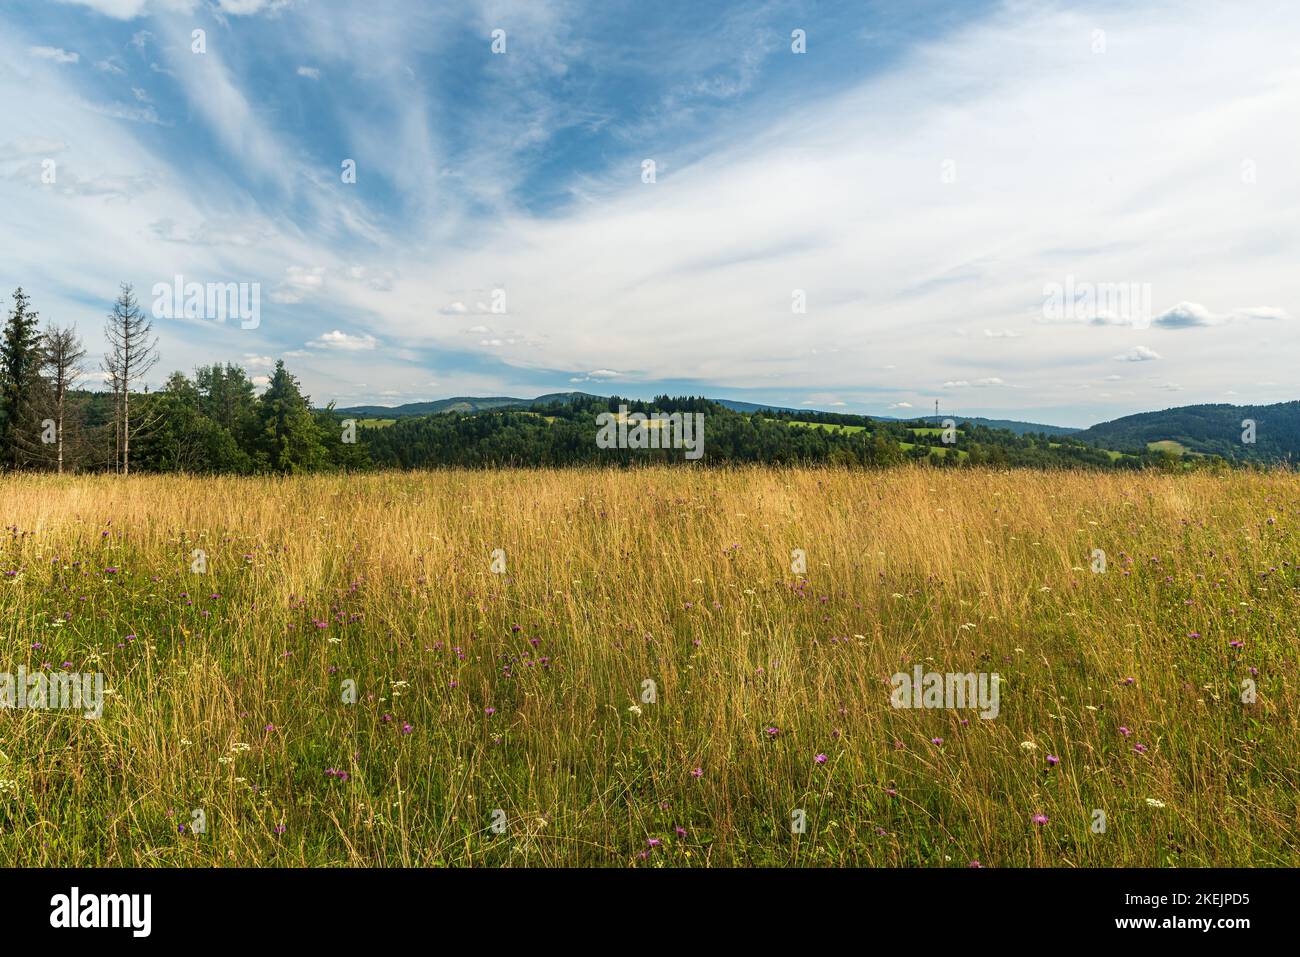 Sommerbergwiese mit Planrs und Hügeln im Hintergrund in den Beskids Bergen an slowakischen - polnischen Grenzen Stockfoto